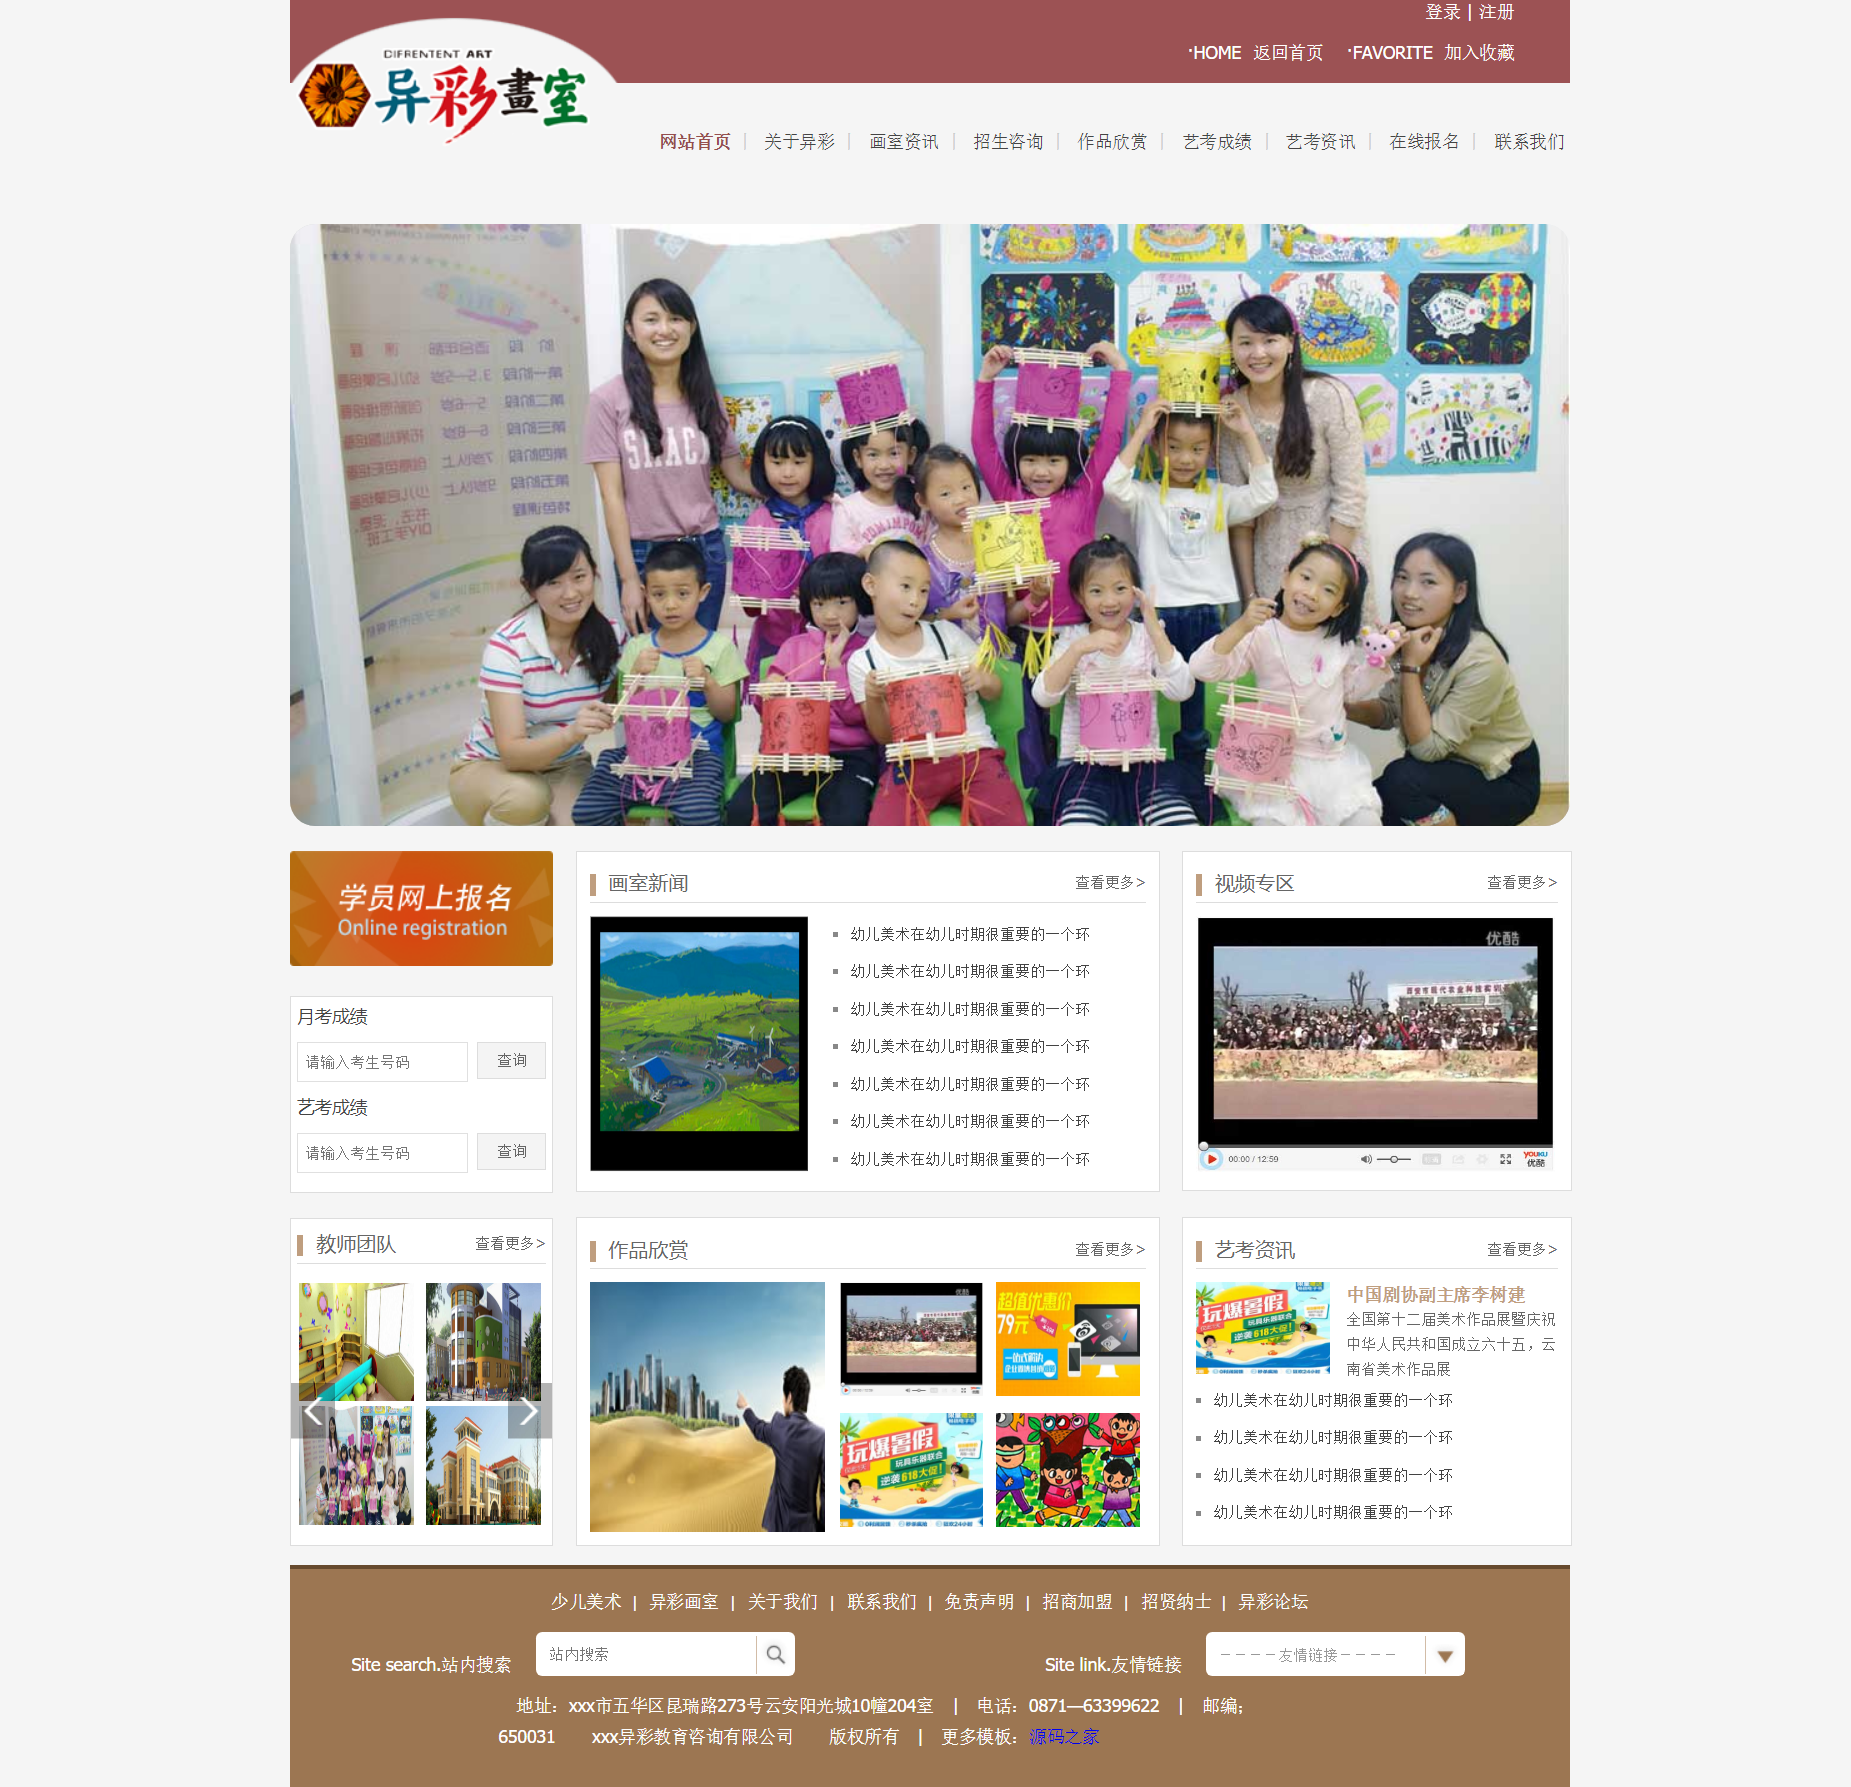 红色简洁风格响应式教育培训画室企业网站模板